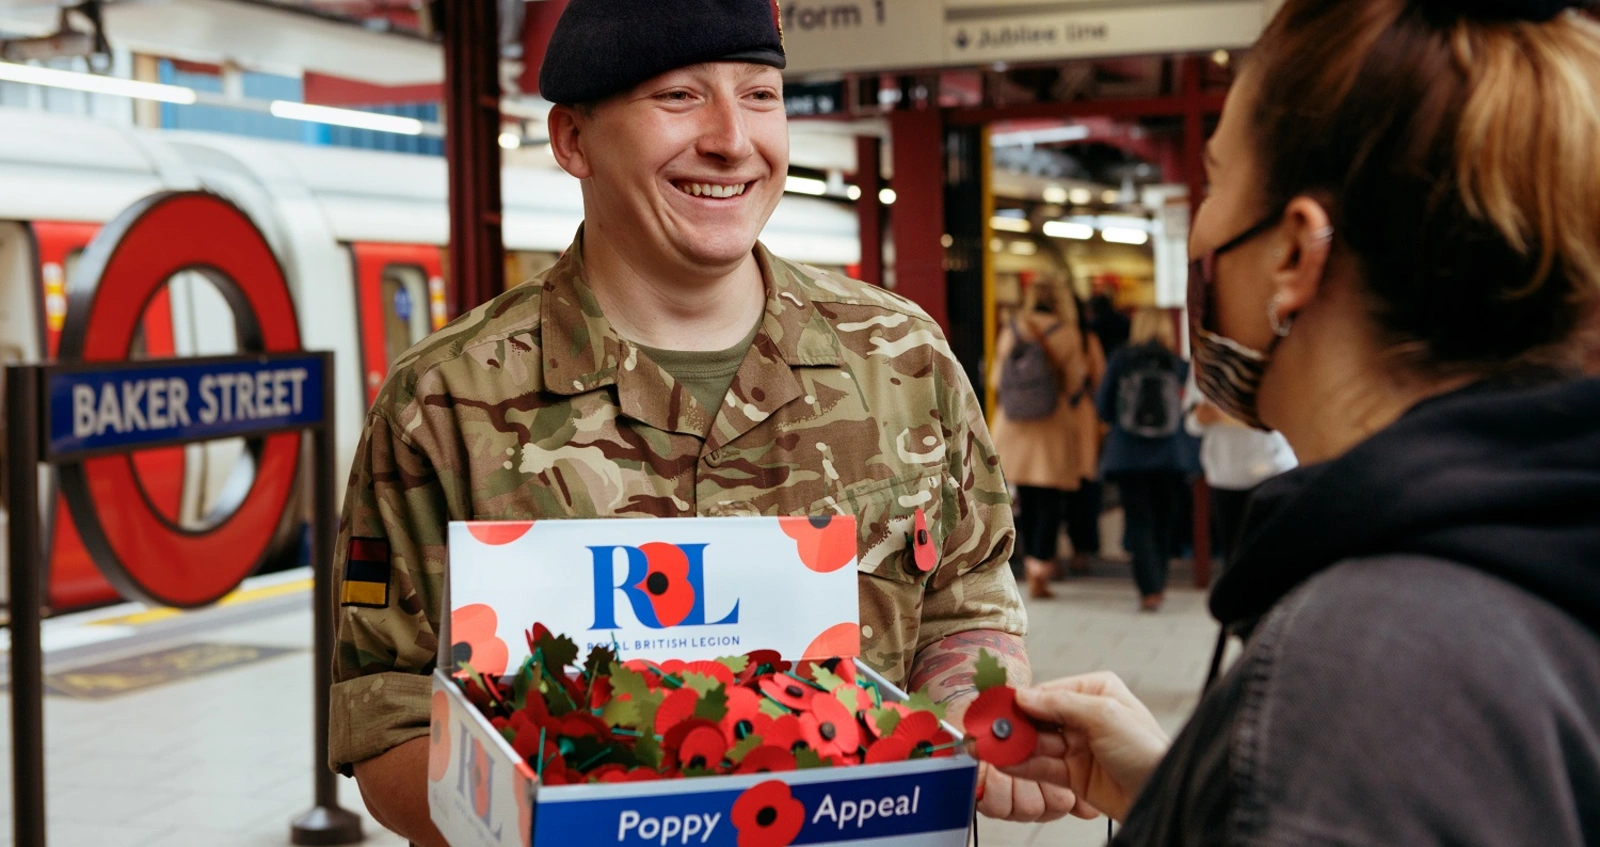 London Poppy Day | Poppy Appeal | Royal British Legion